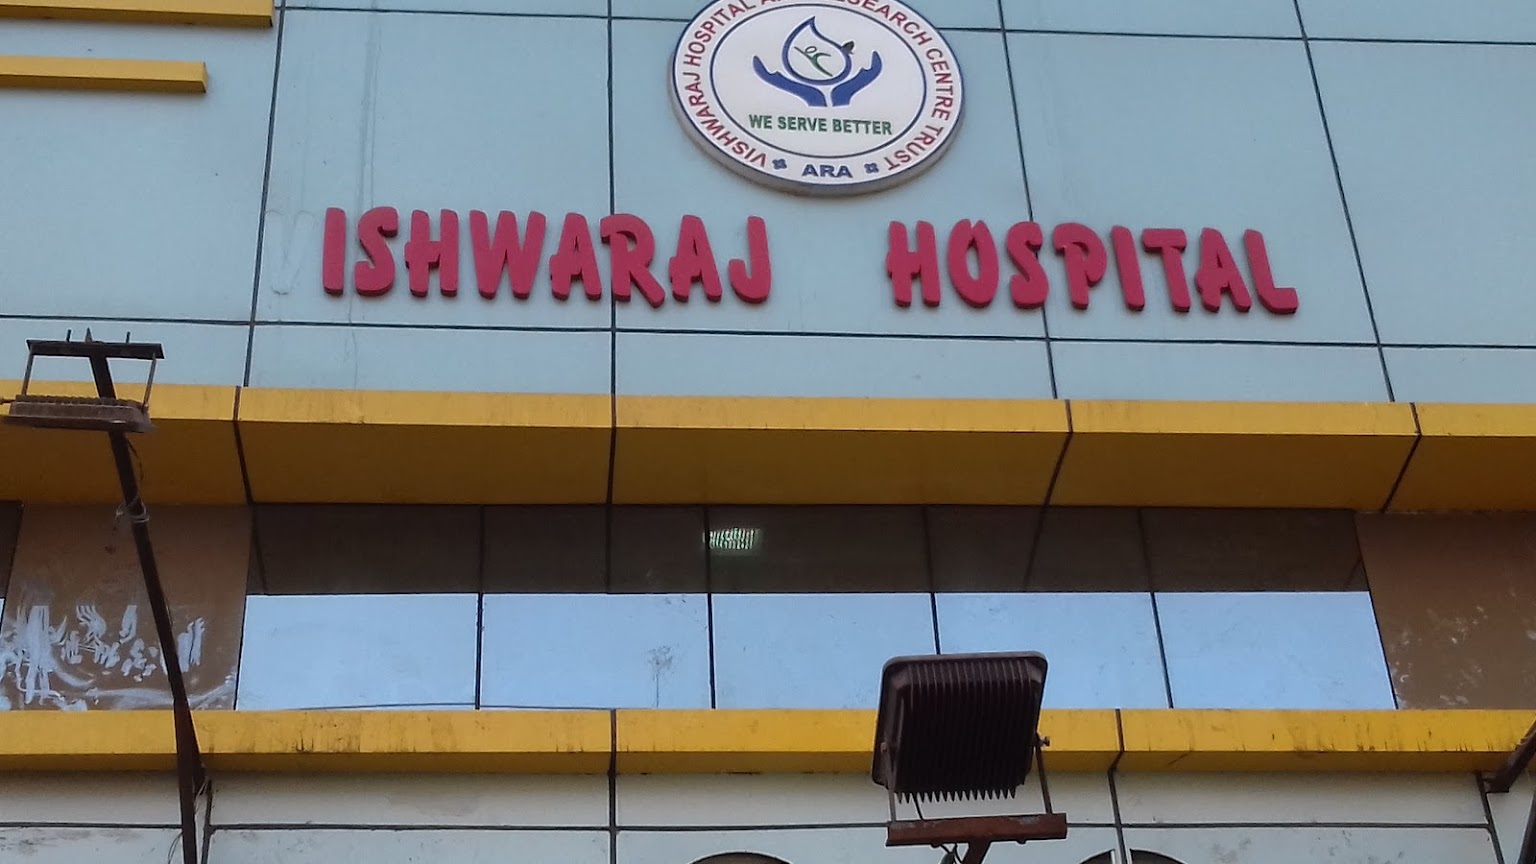 Vishwaraj Hospital